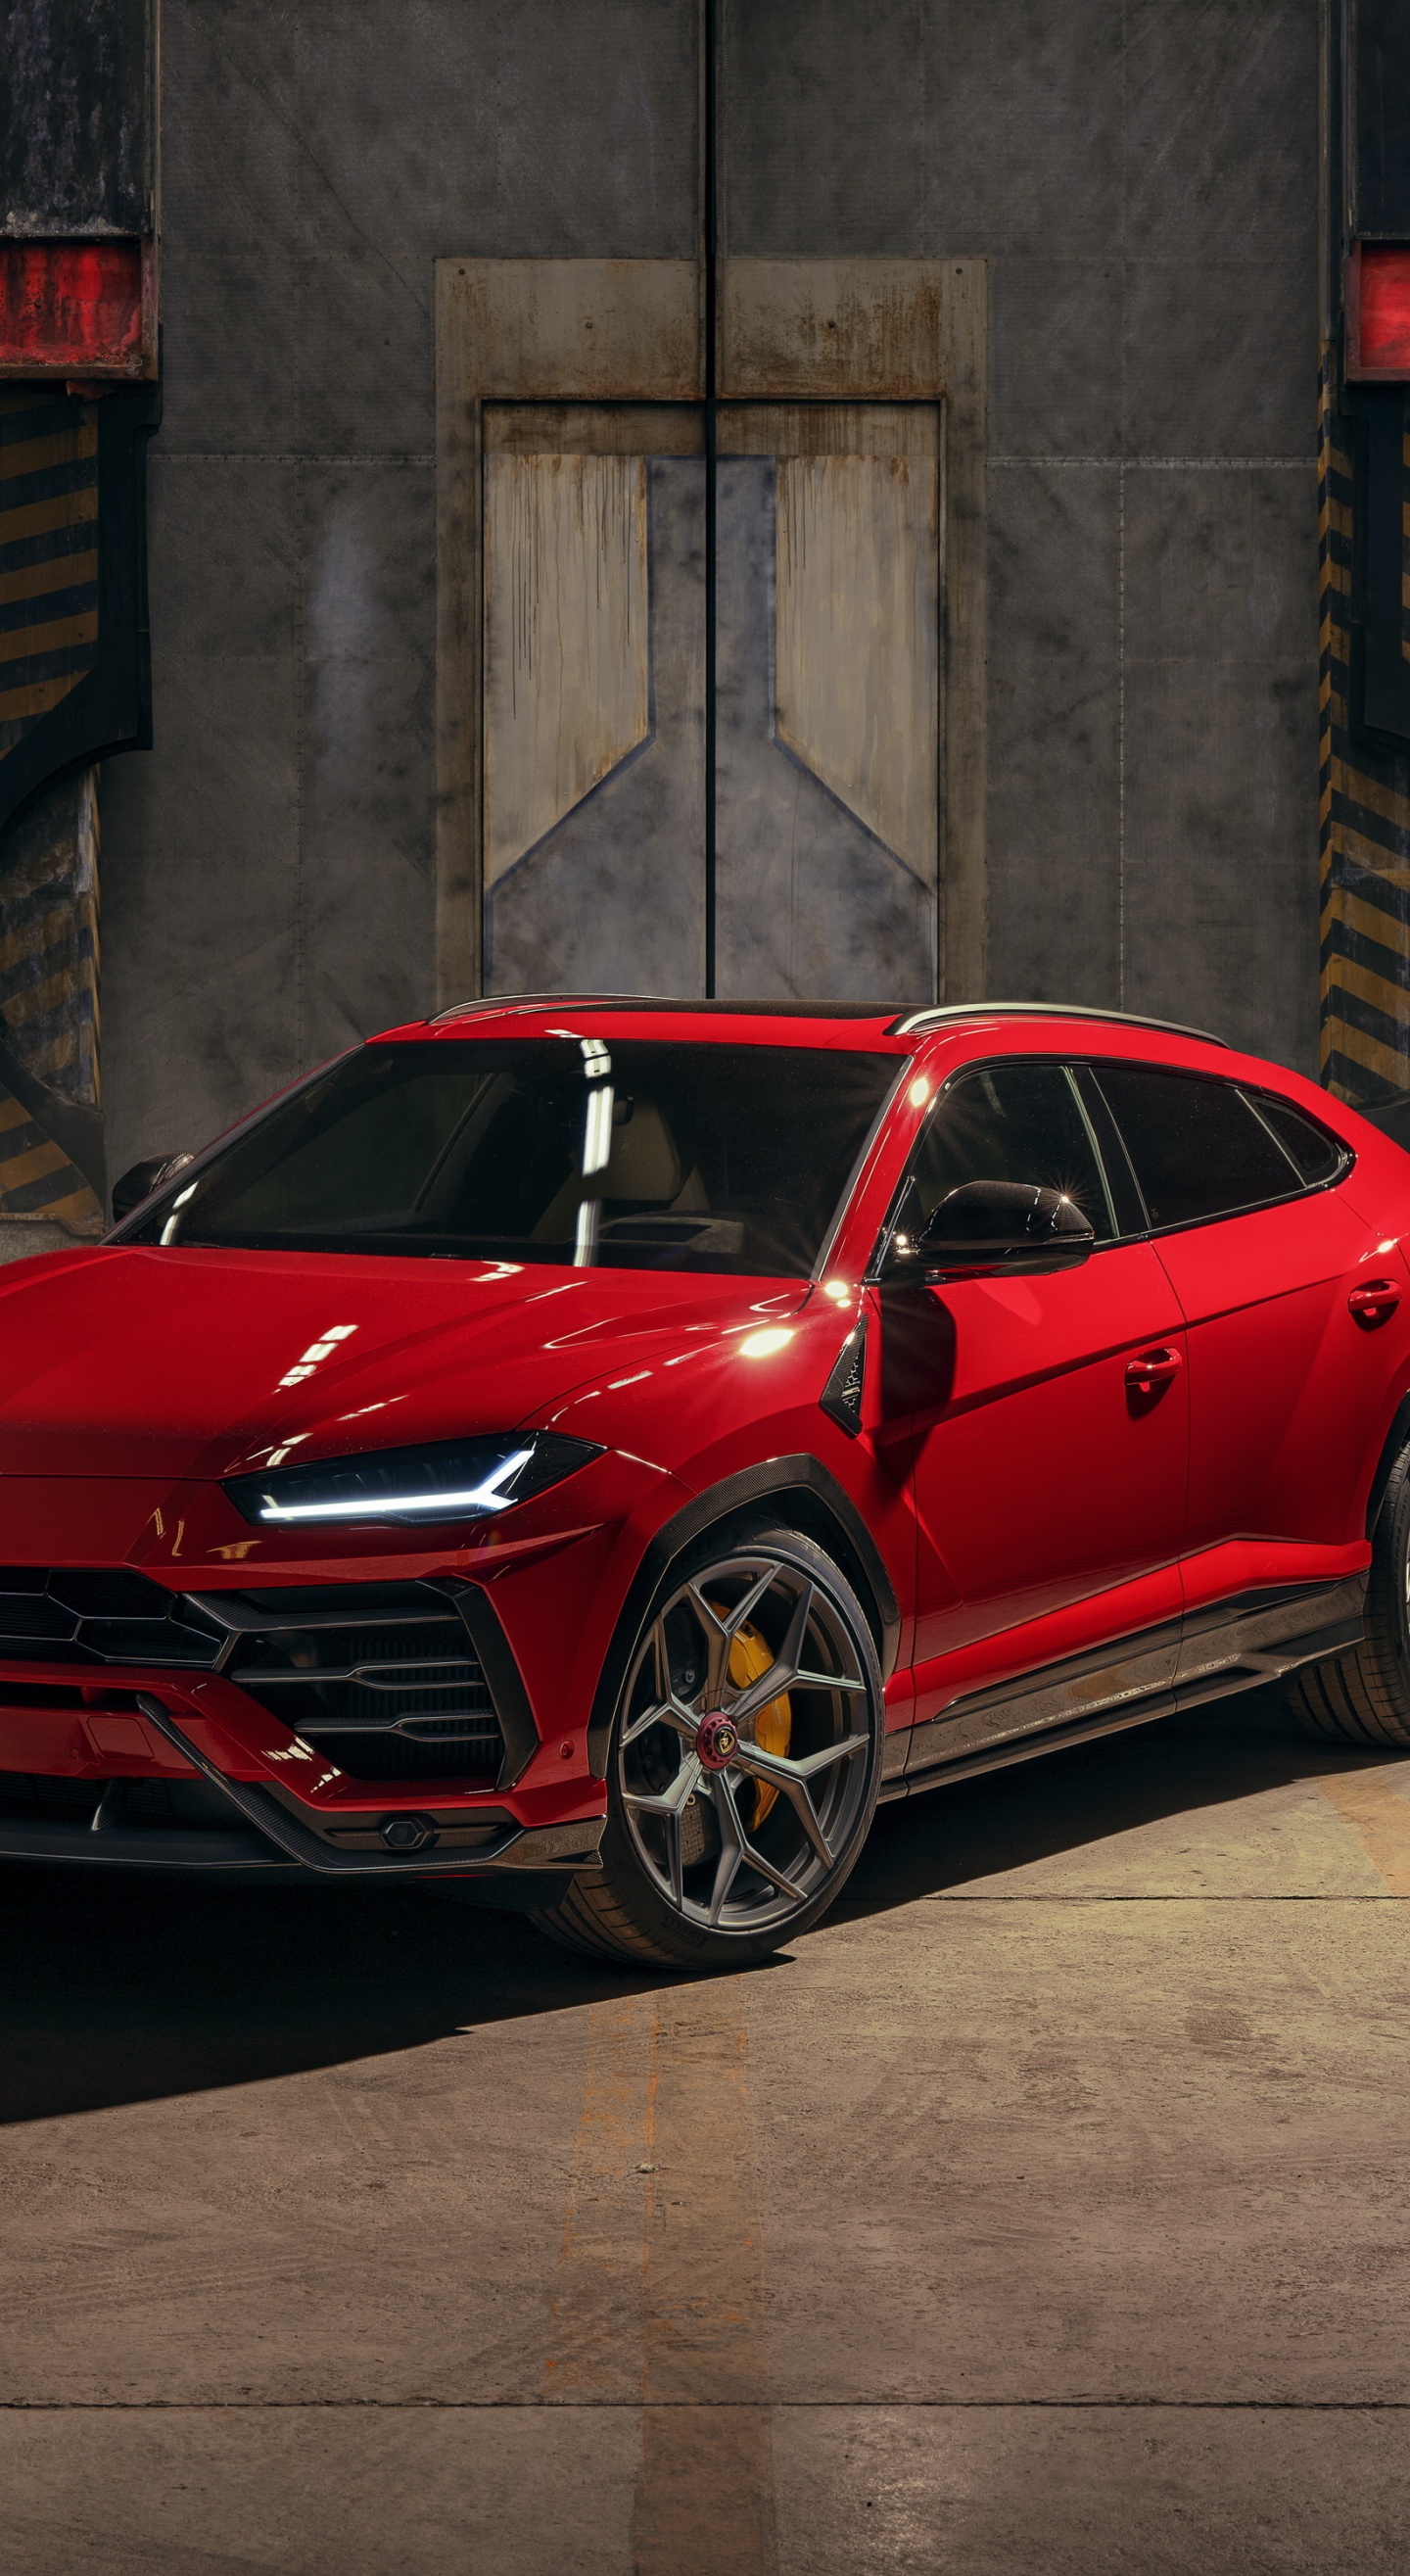 Download 2019 car, red car, lamborghini urus 1440x2630 wallpaper